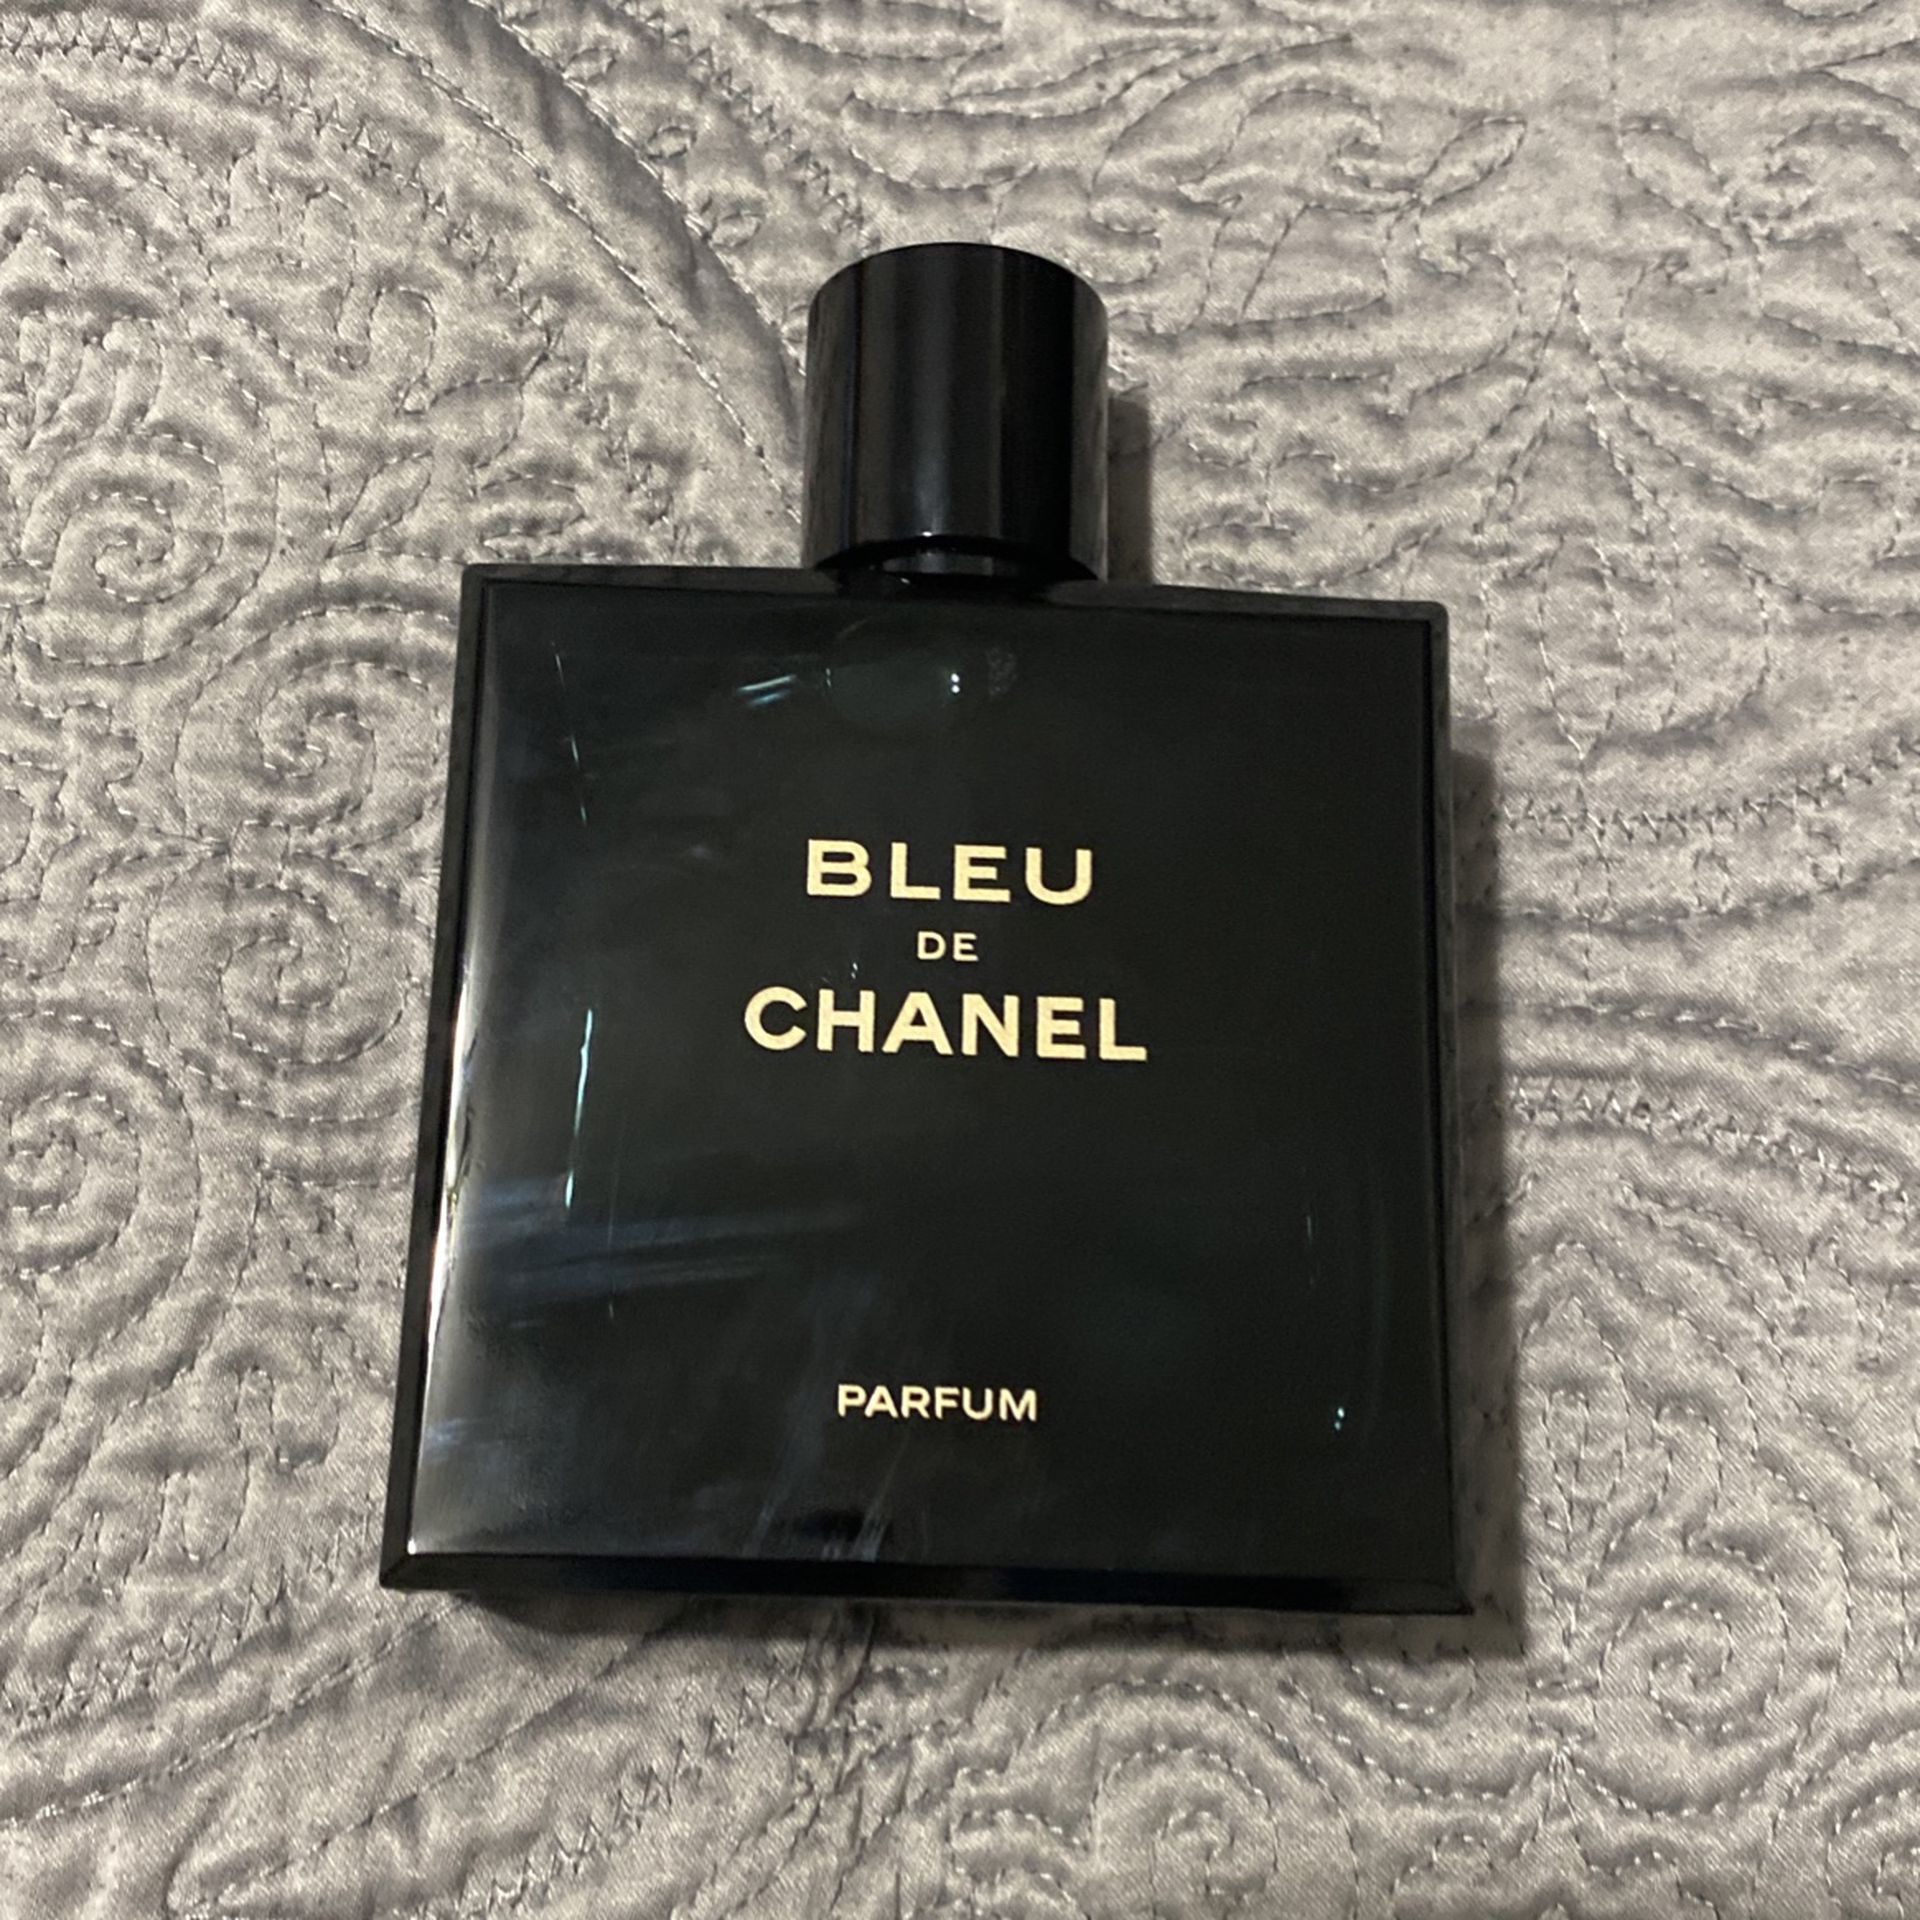 Bleu De Chanel Perfume Original for Sale in Miami, FL - OfferUp